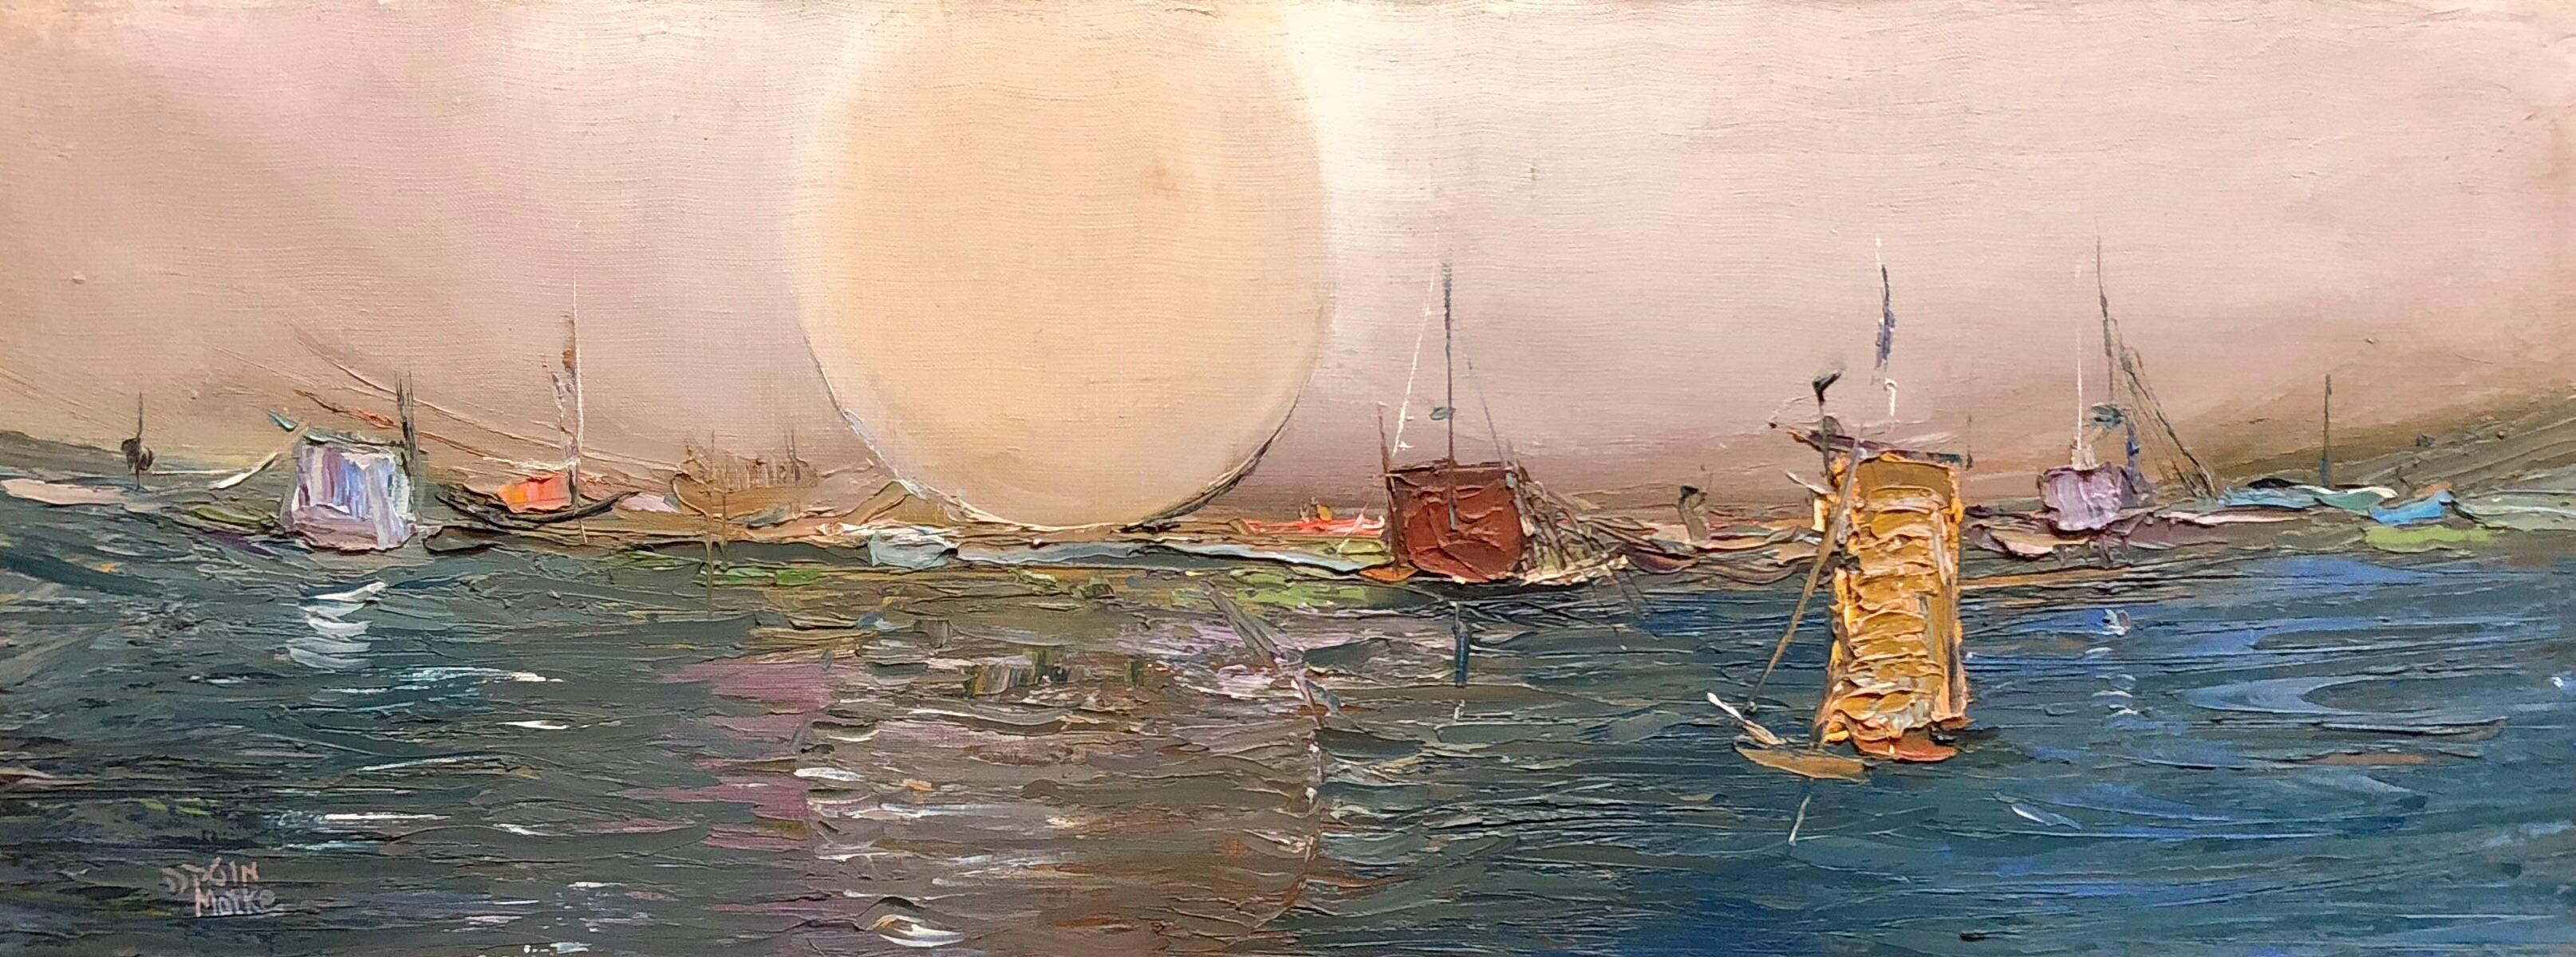 Israelische modernistische abstrakt-expressionistische Meereslandschaft, Ölgemälde, Hafen von Tel Aviv – Painting von Motke Blum